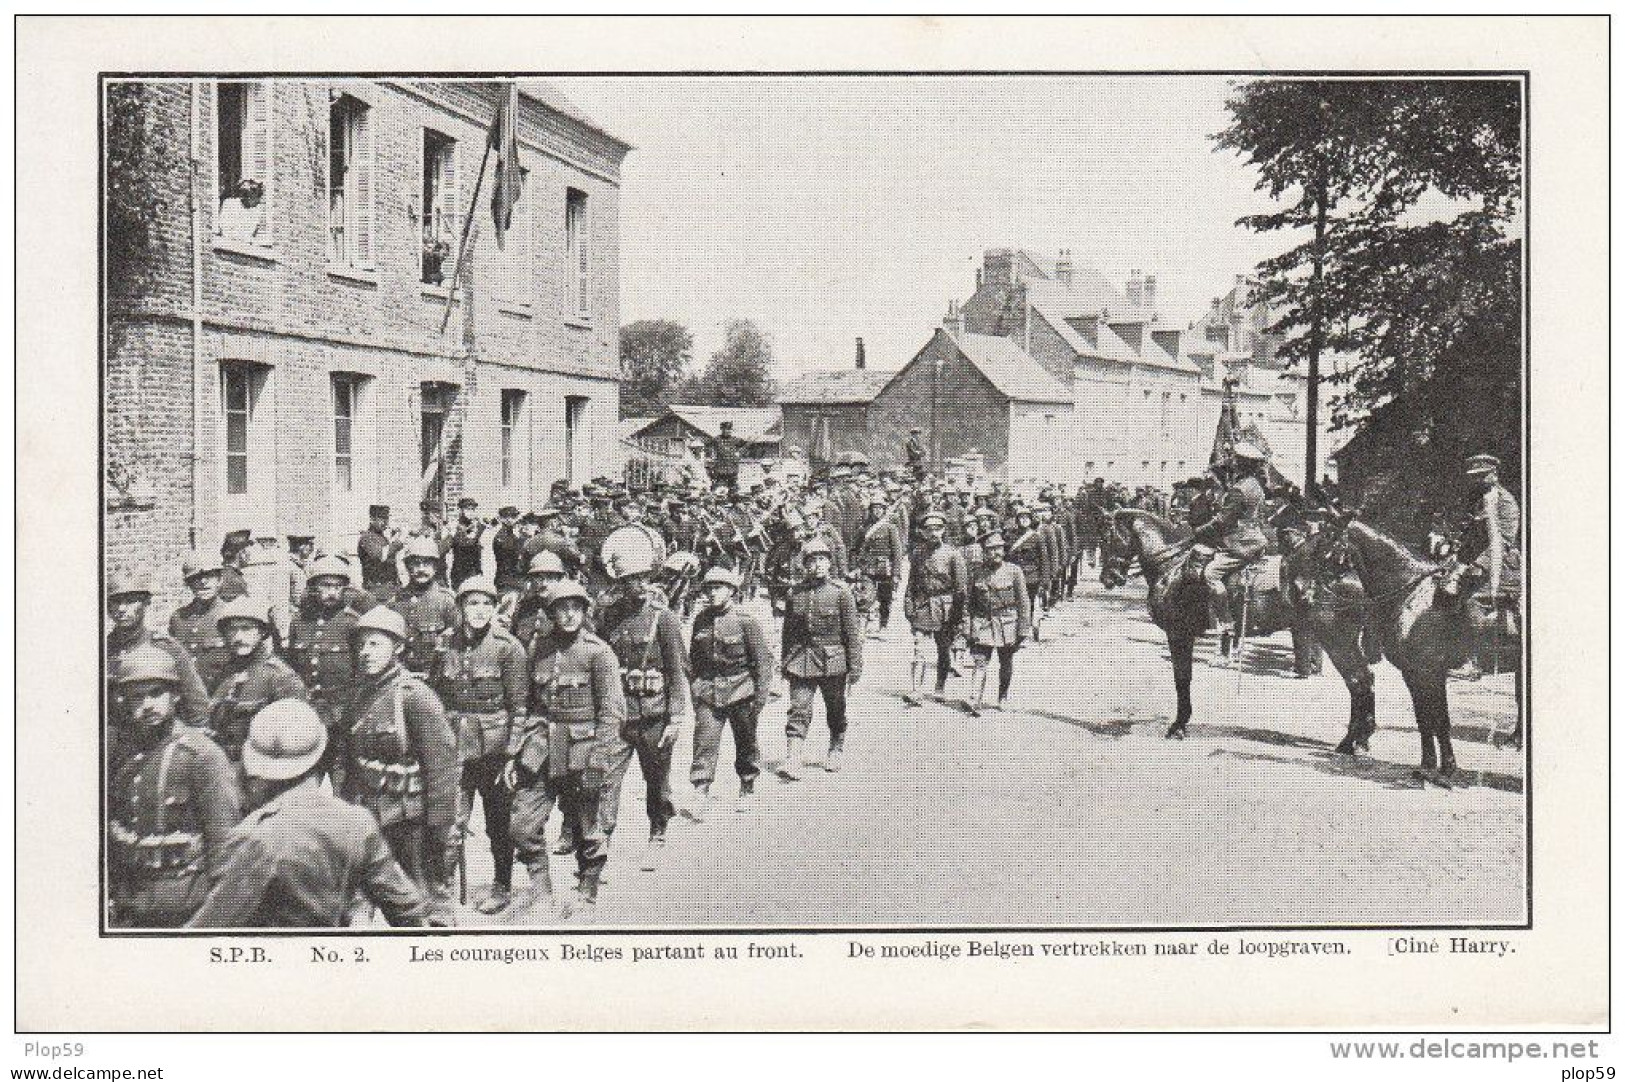 lot 3 cpa courageux belges partant au front WWI de moedige belgen vertrekkennaar de loopgraven les mortier le drapeau